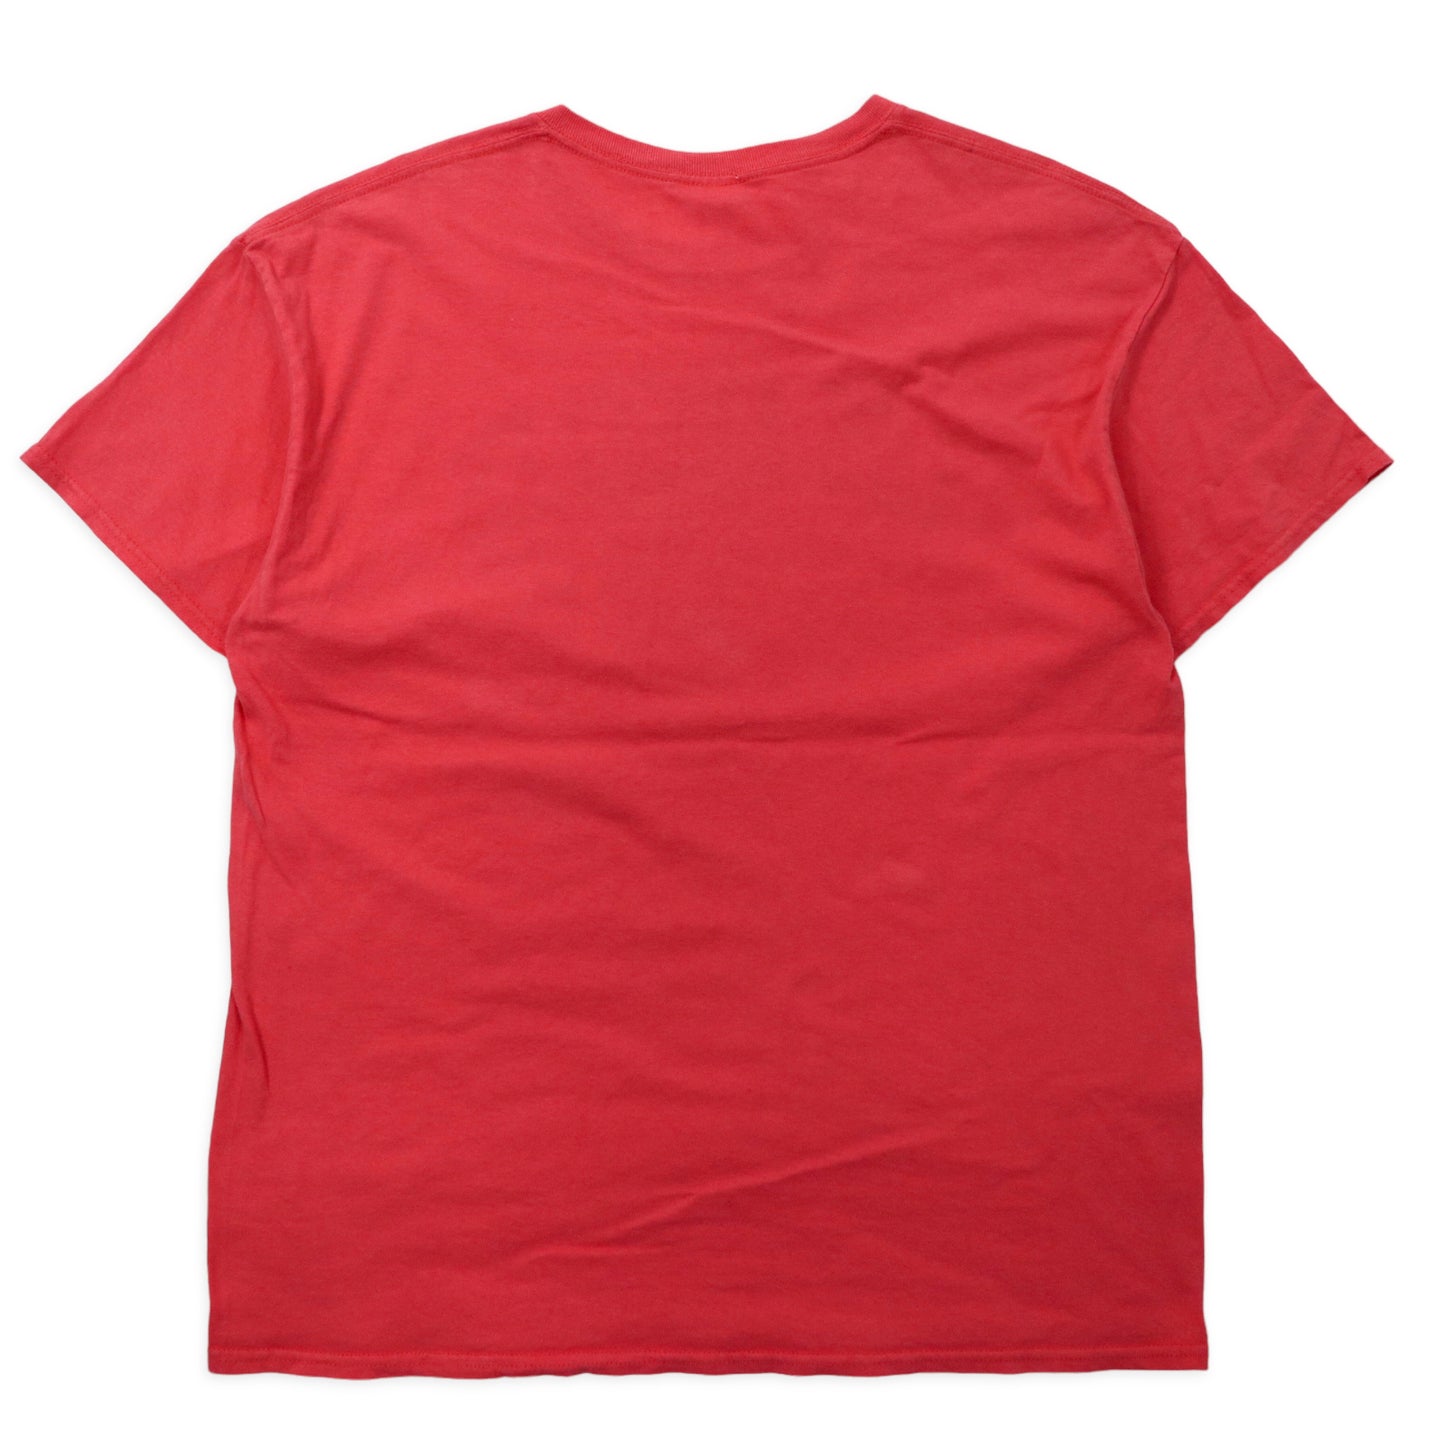 GILDAN カレッジプリント Tシャツ XL ピンク コットン LOS ANGELES ビッグサイズ